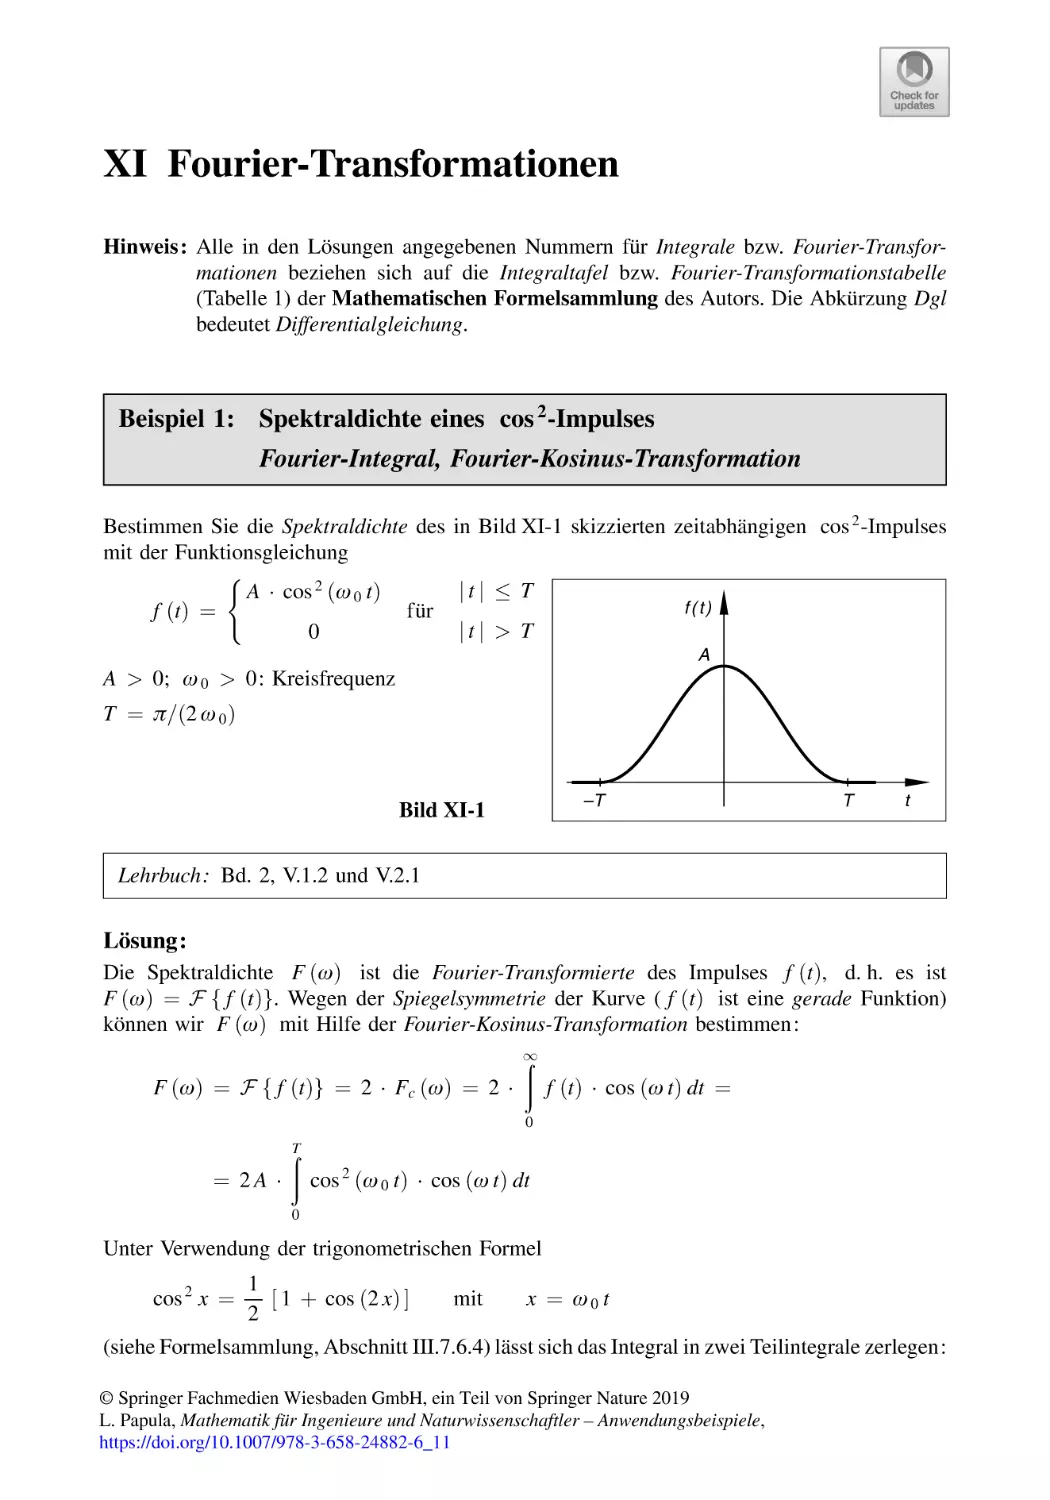 XI Fourier-Transformationen
Beispiel 1